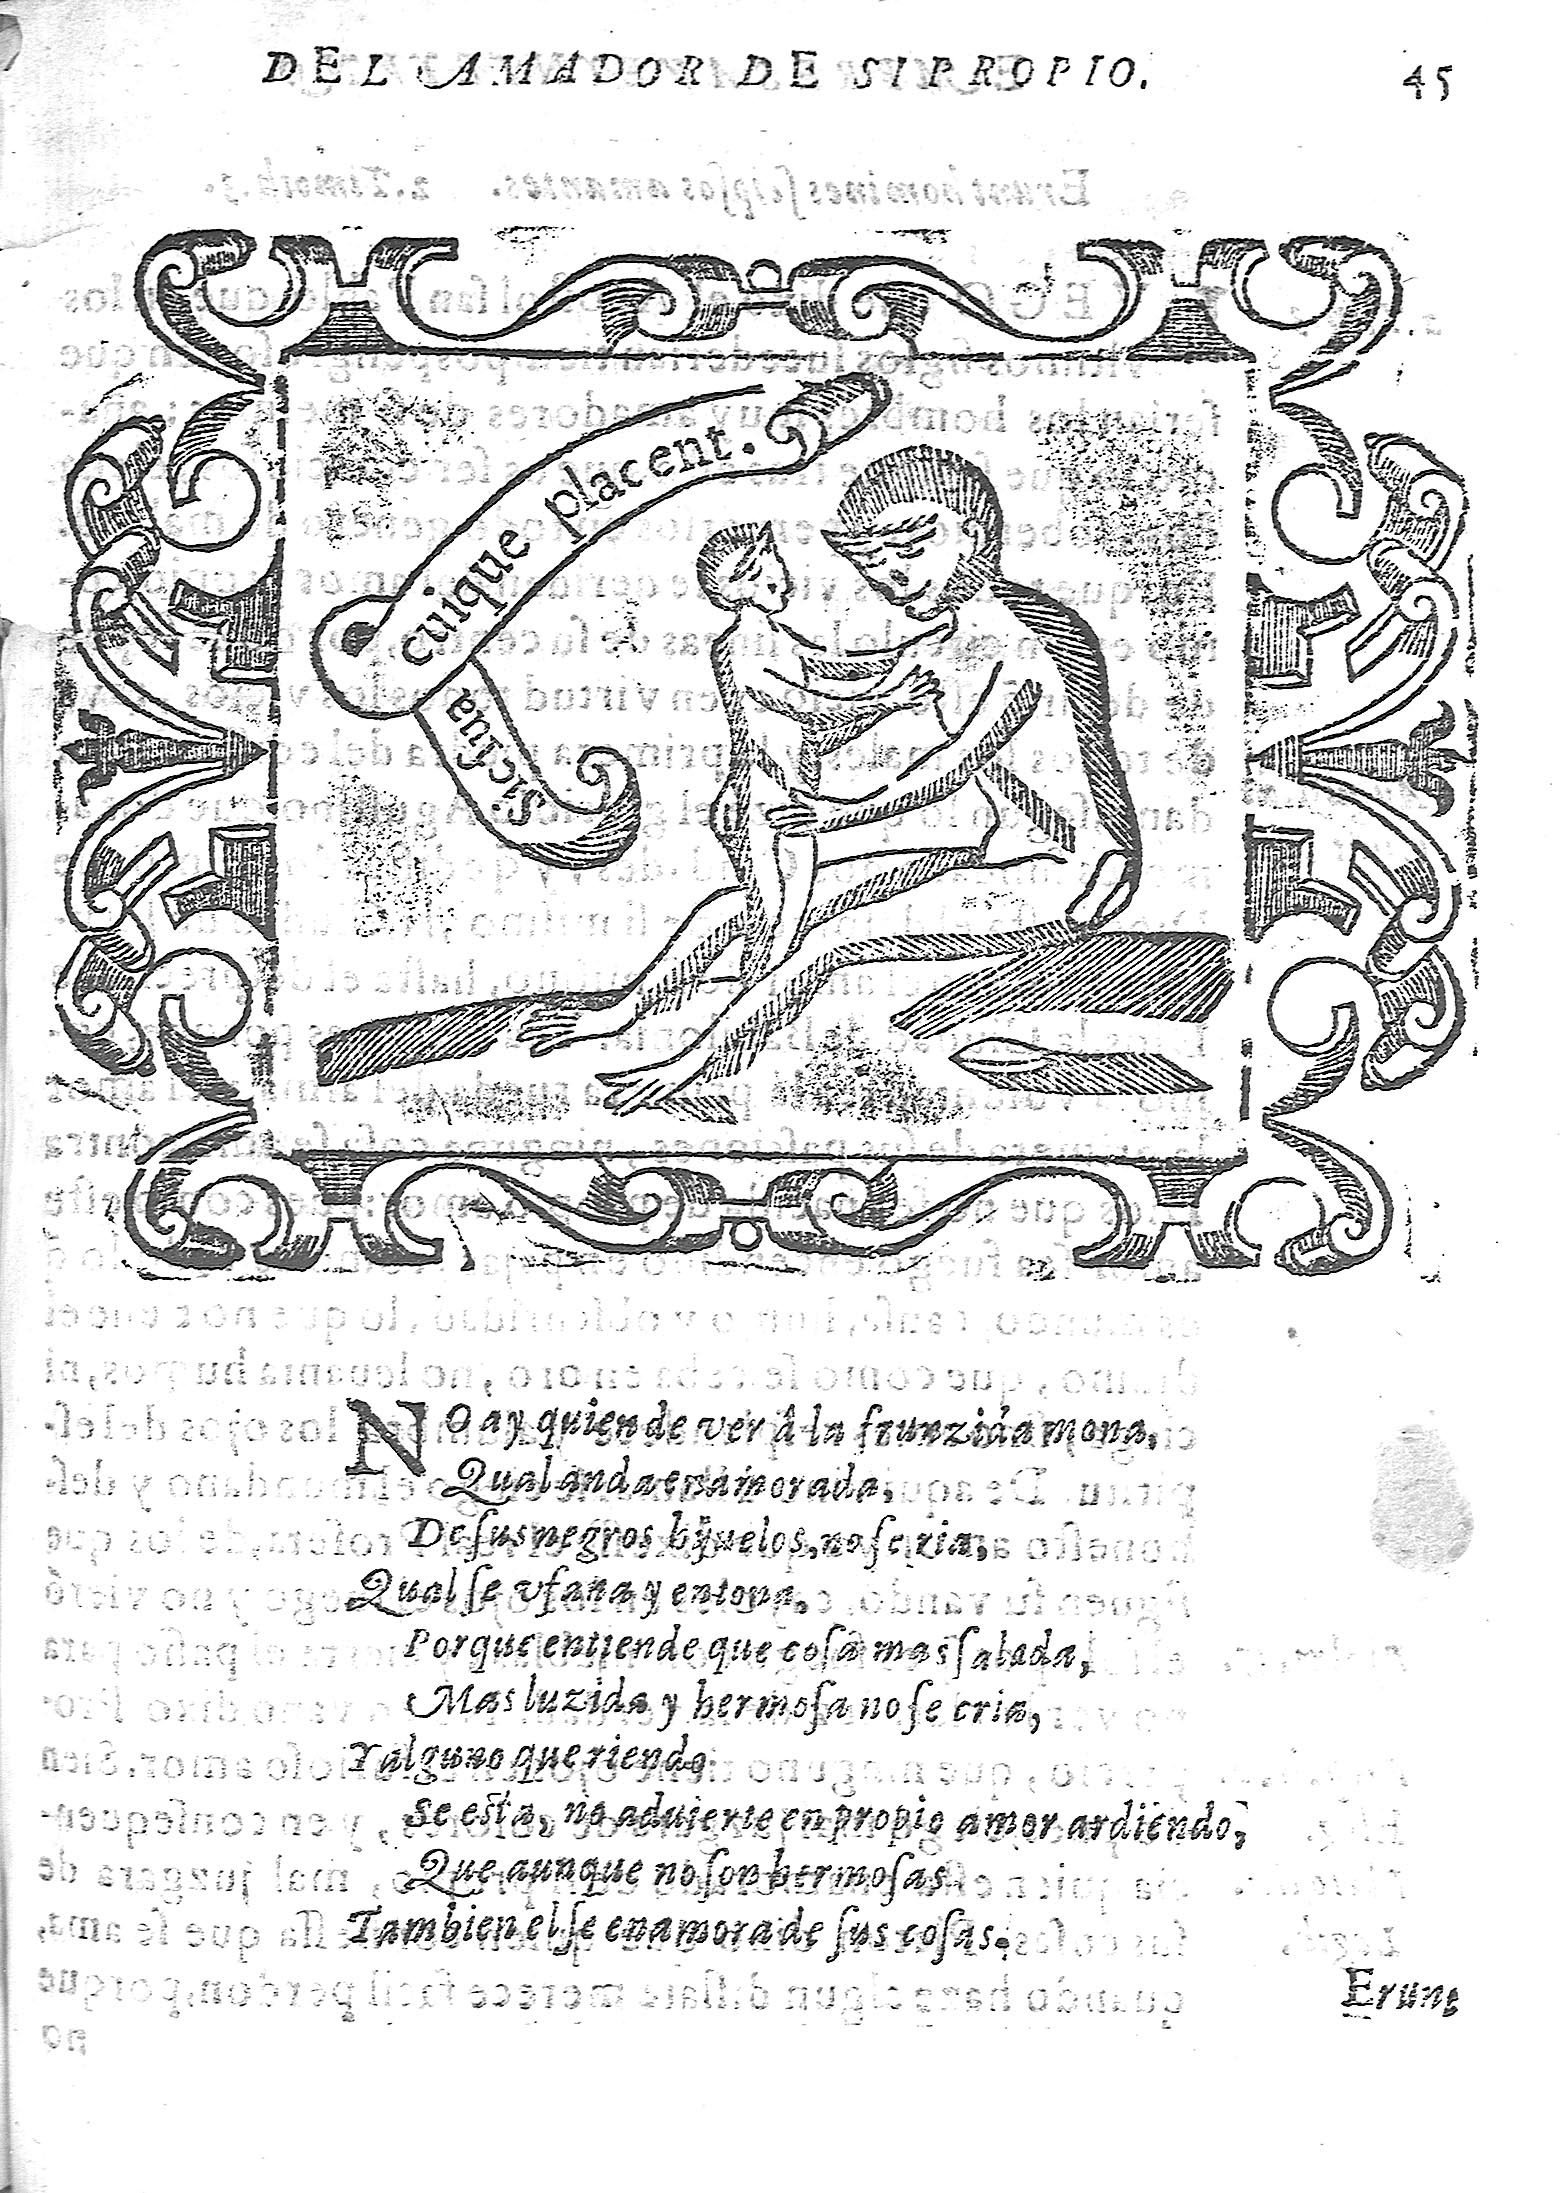 Villava, Empresas espirituales y morales, 1613, Partie 2, Embleme 23